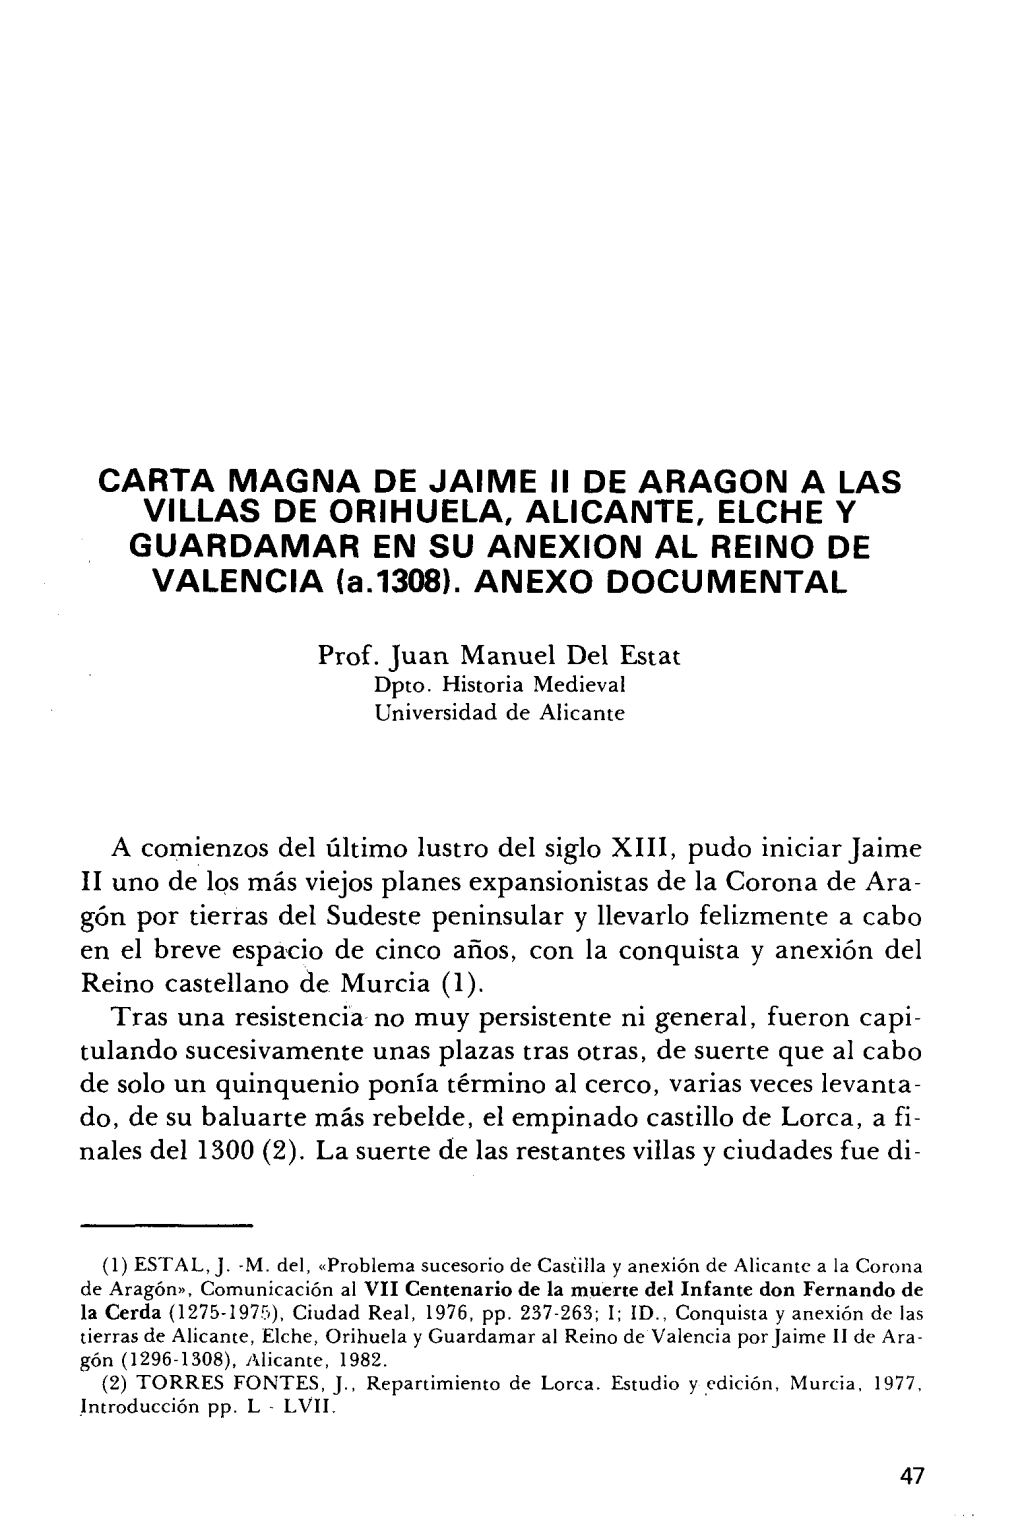 CARTA MAGNA DE JAIME II DE ARAGÓN a LAS VILLAS DE ORIHUELA, ALICANTE, ELCHE Y GUARDAMAR EN SU ANEXIÓN AL REINO DE VALENCIA (A.1308)